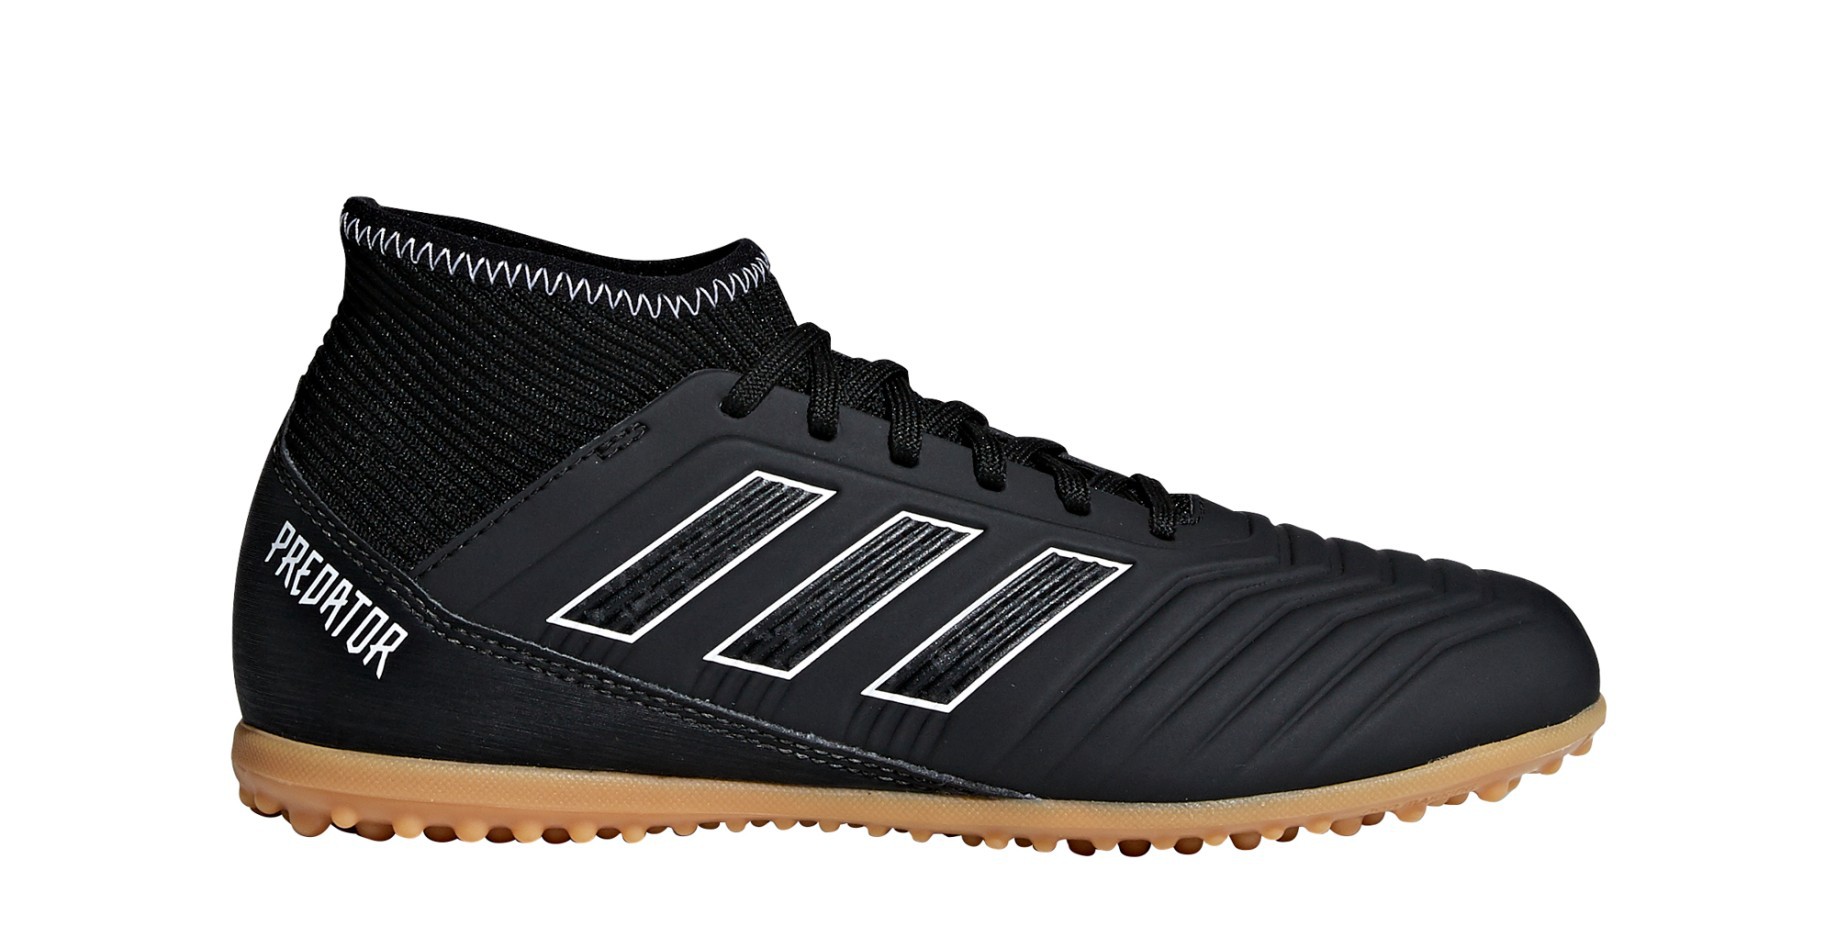 Zapatos de Fútbol Niño Adidas Predator Tango 18.3 TF Sombra a Modo de Pack negro - Adidas - SportIT.com